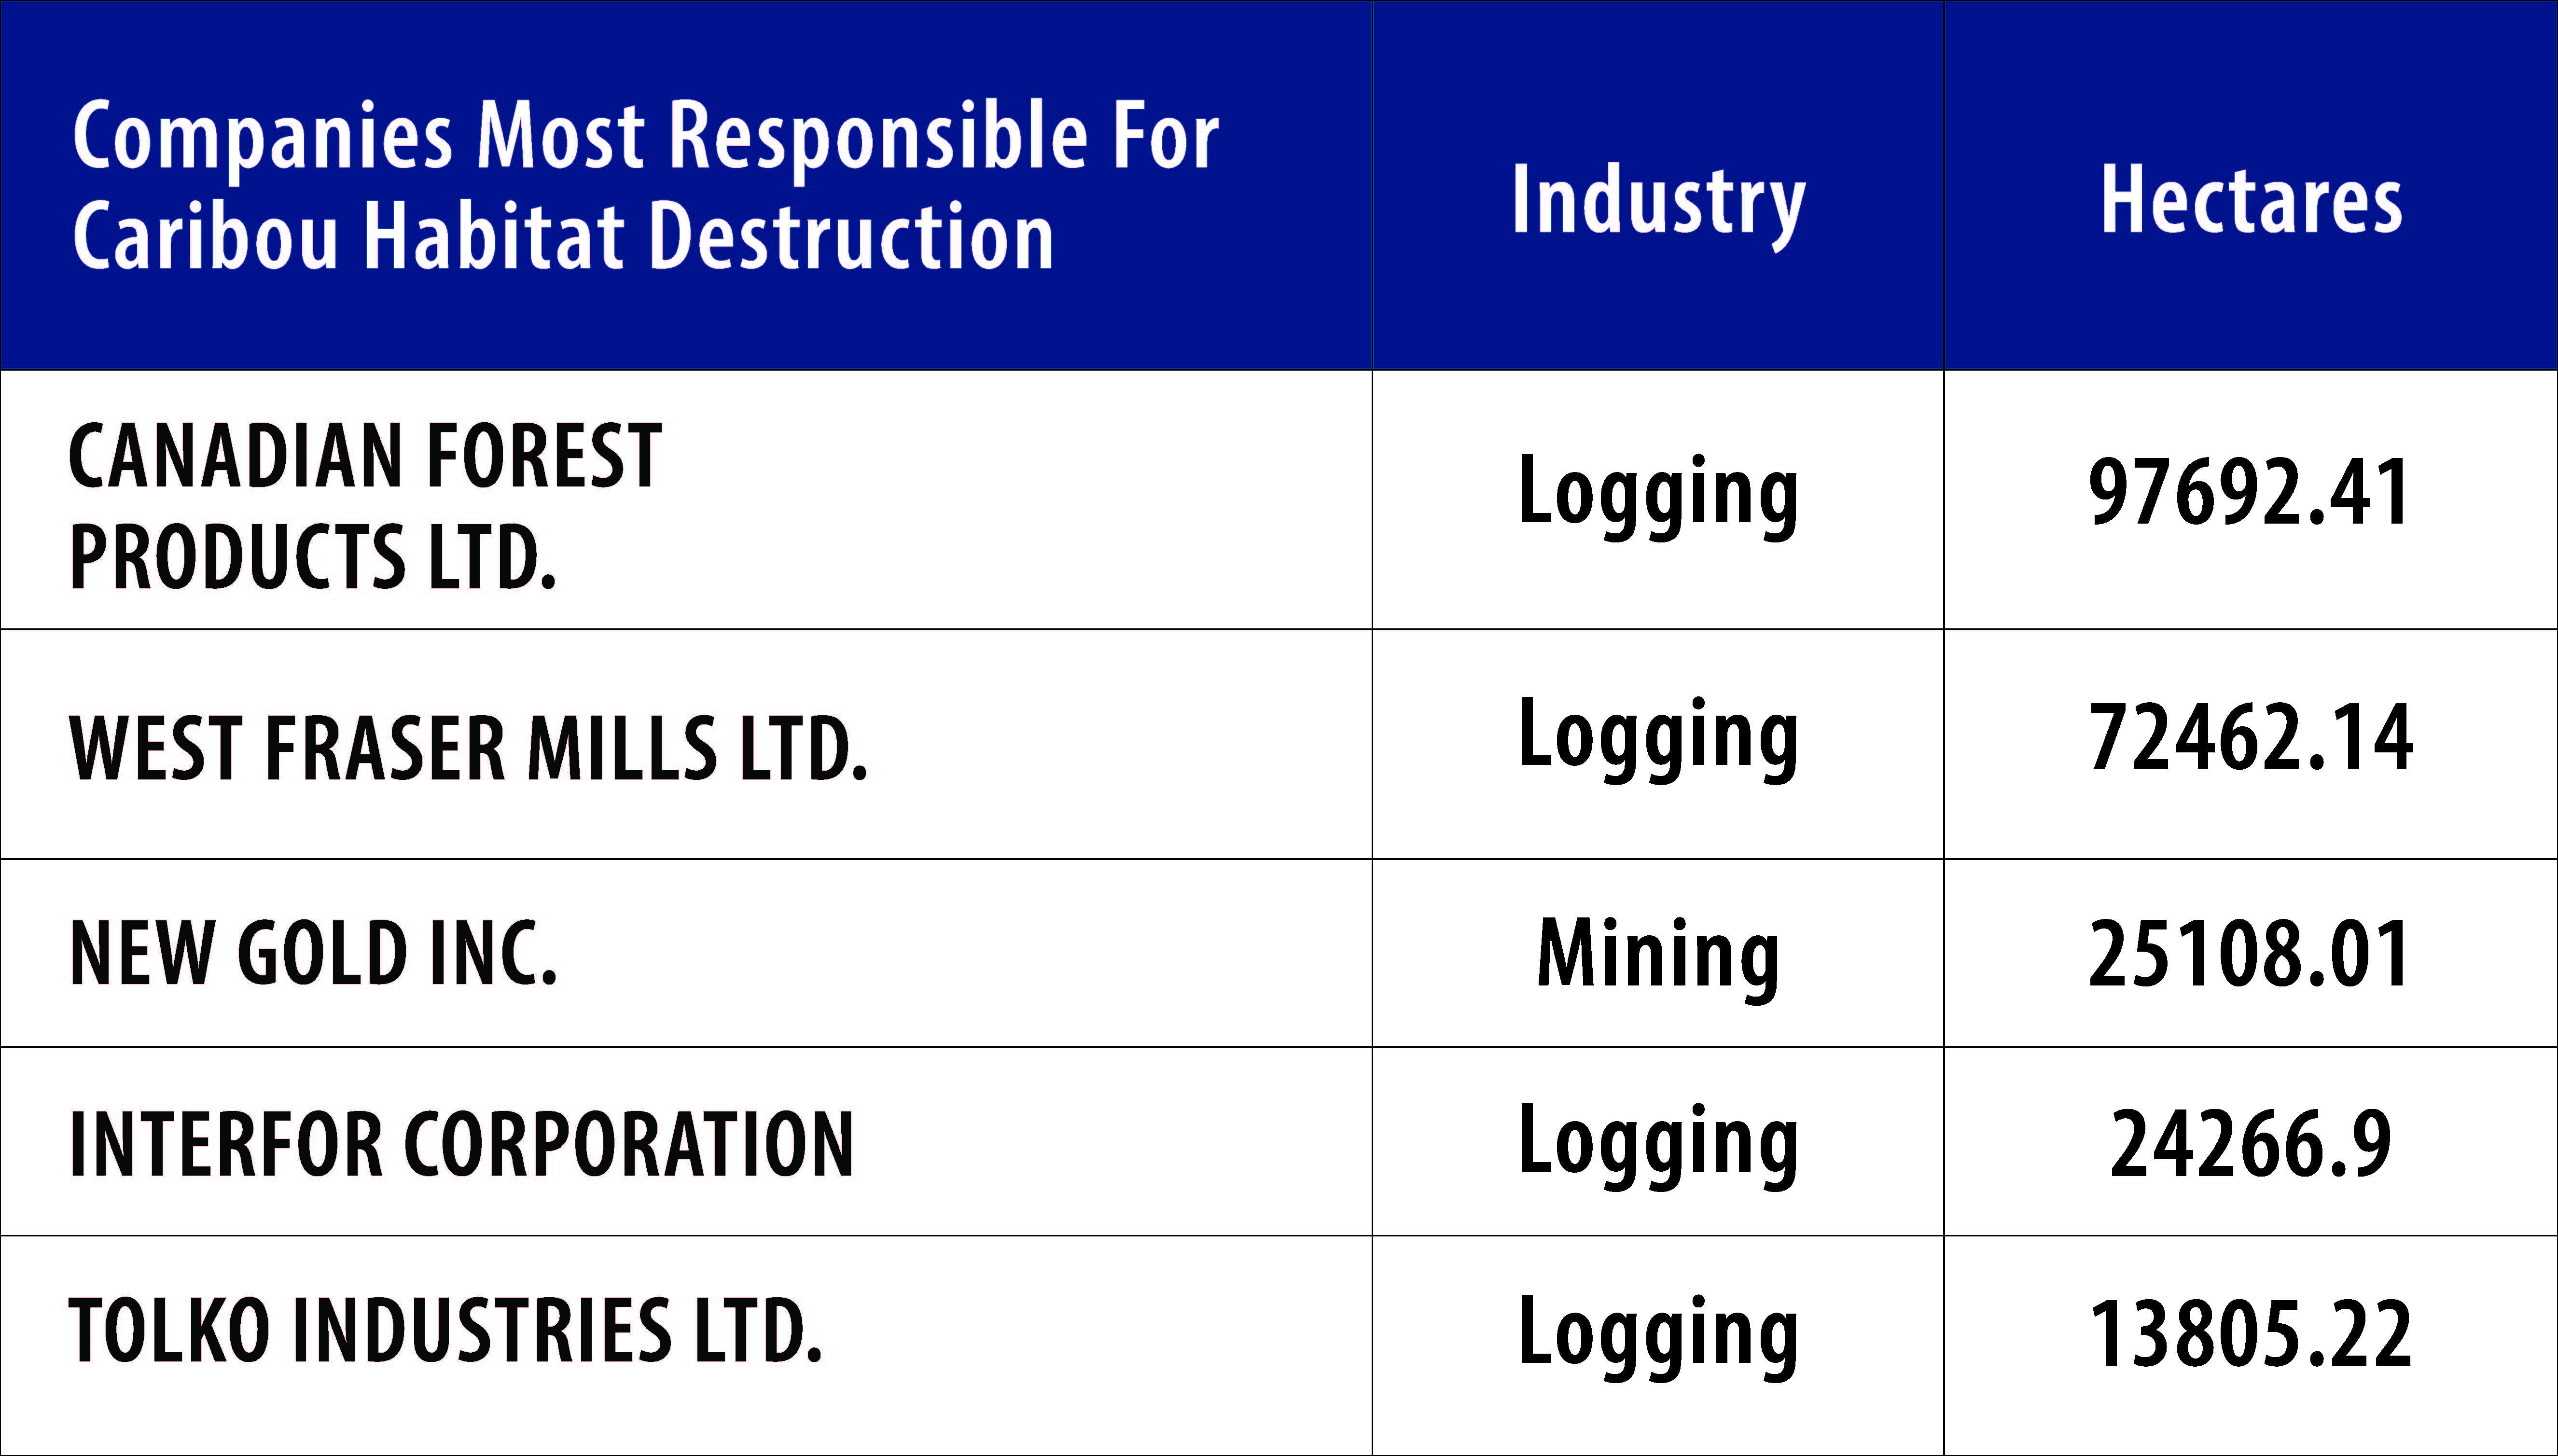 Companies most responsible for caribou habitat destruction